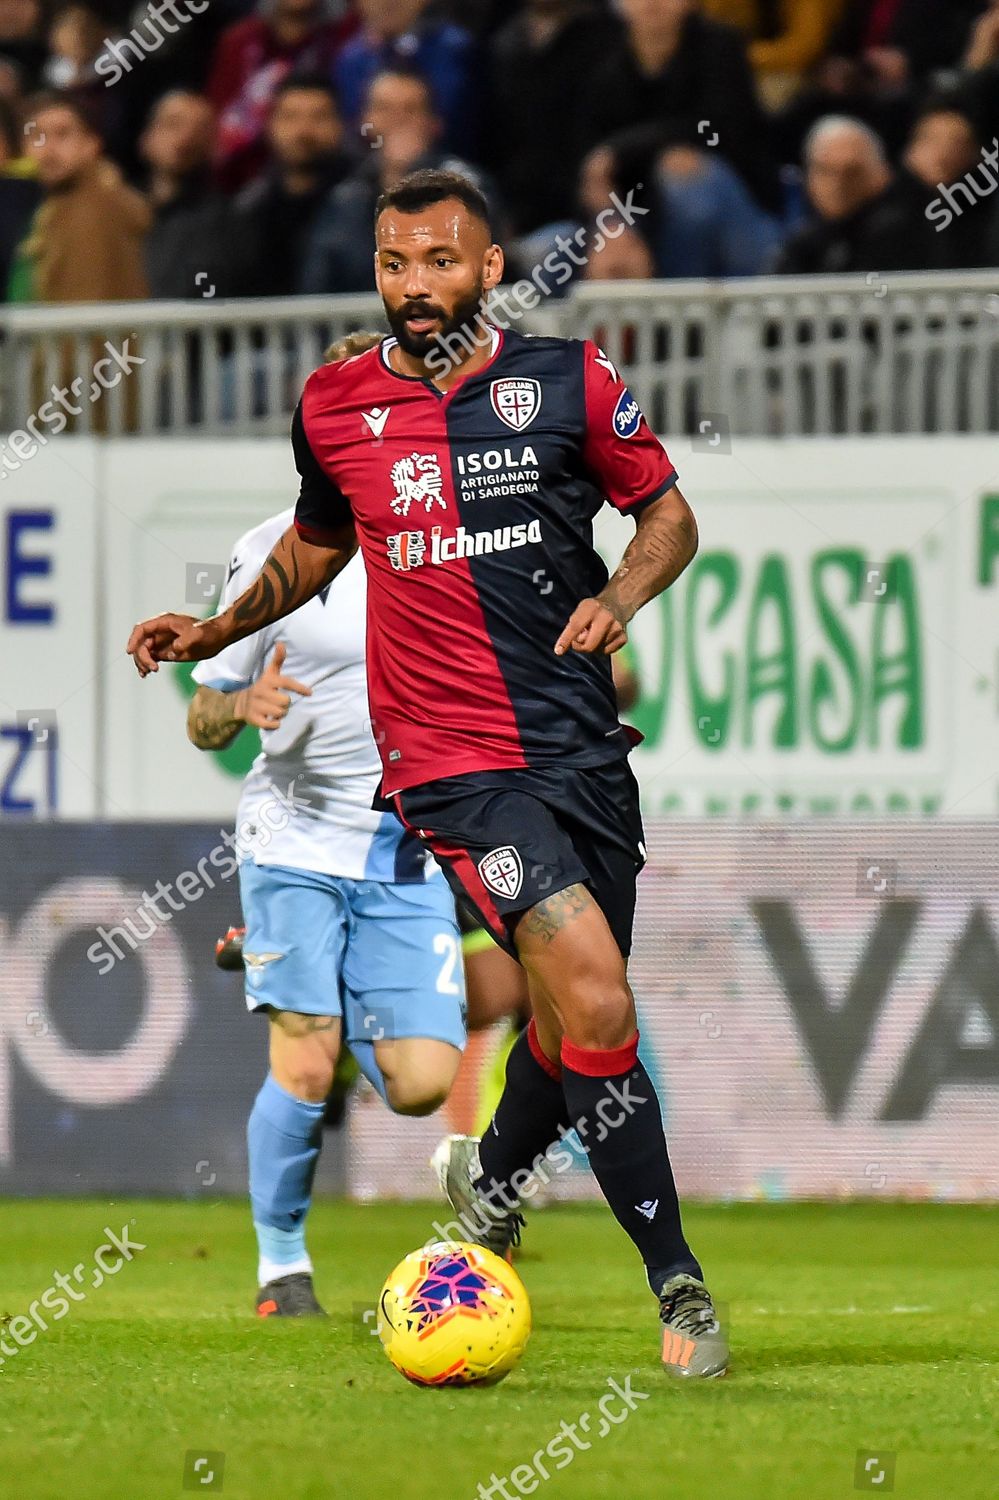 Galvao Joao Pedro Cagliari Calcio Redaktionelles Stockfoto Stockbild Shutterstock